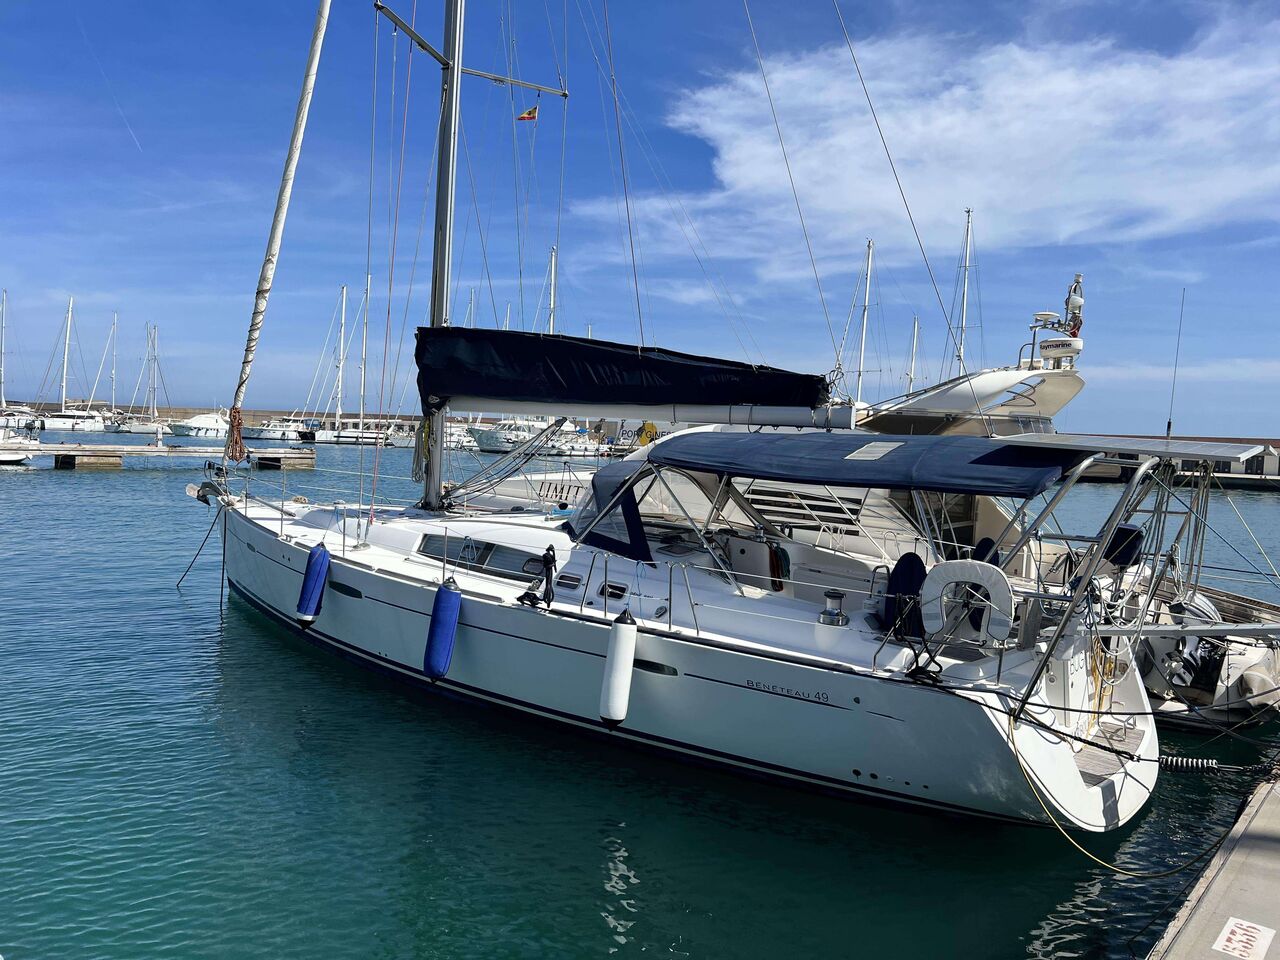 Bénéteau 49 (sailboat) for sale